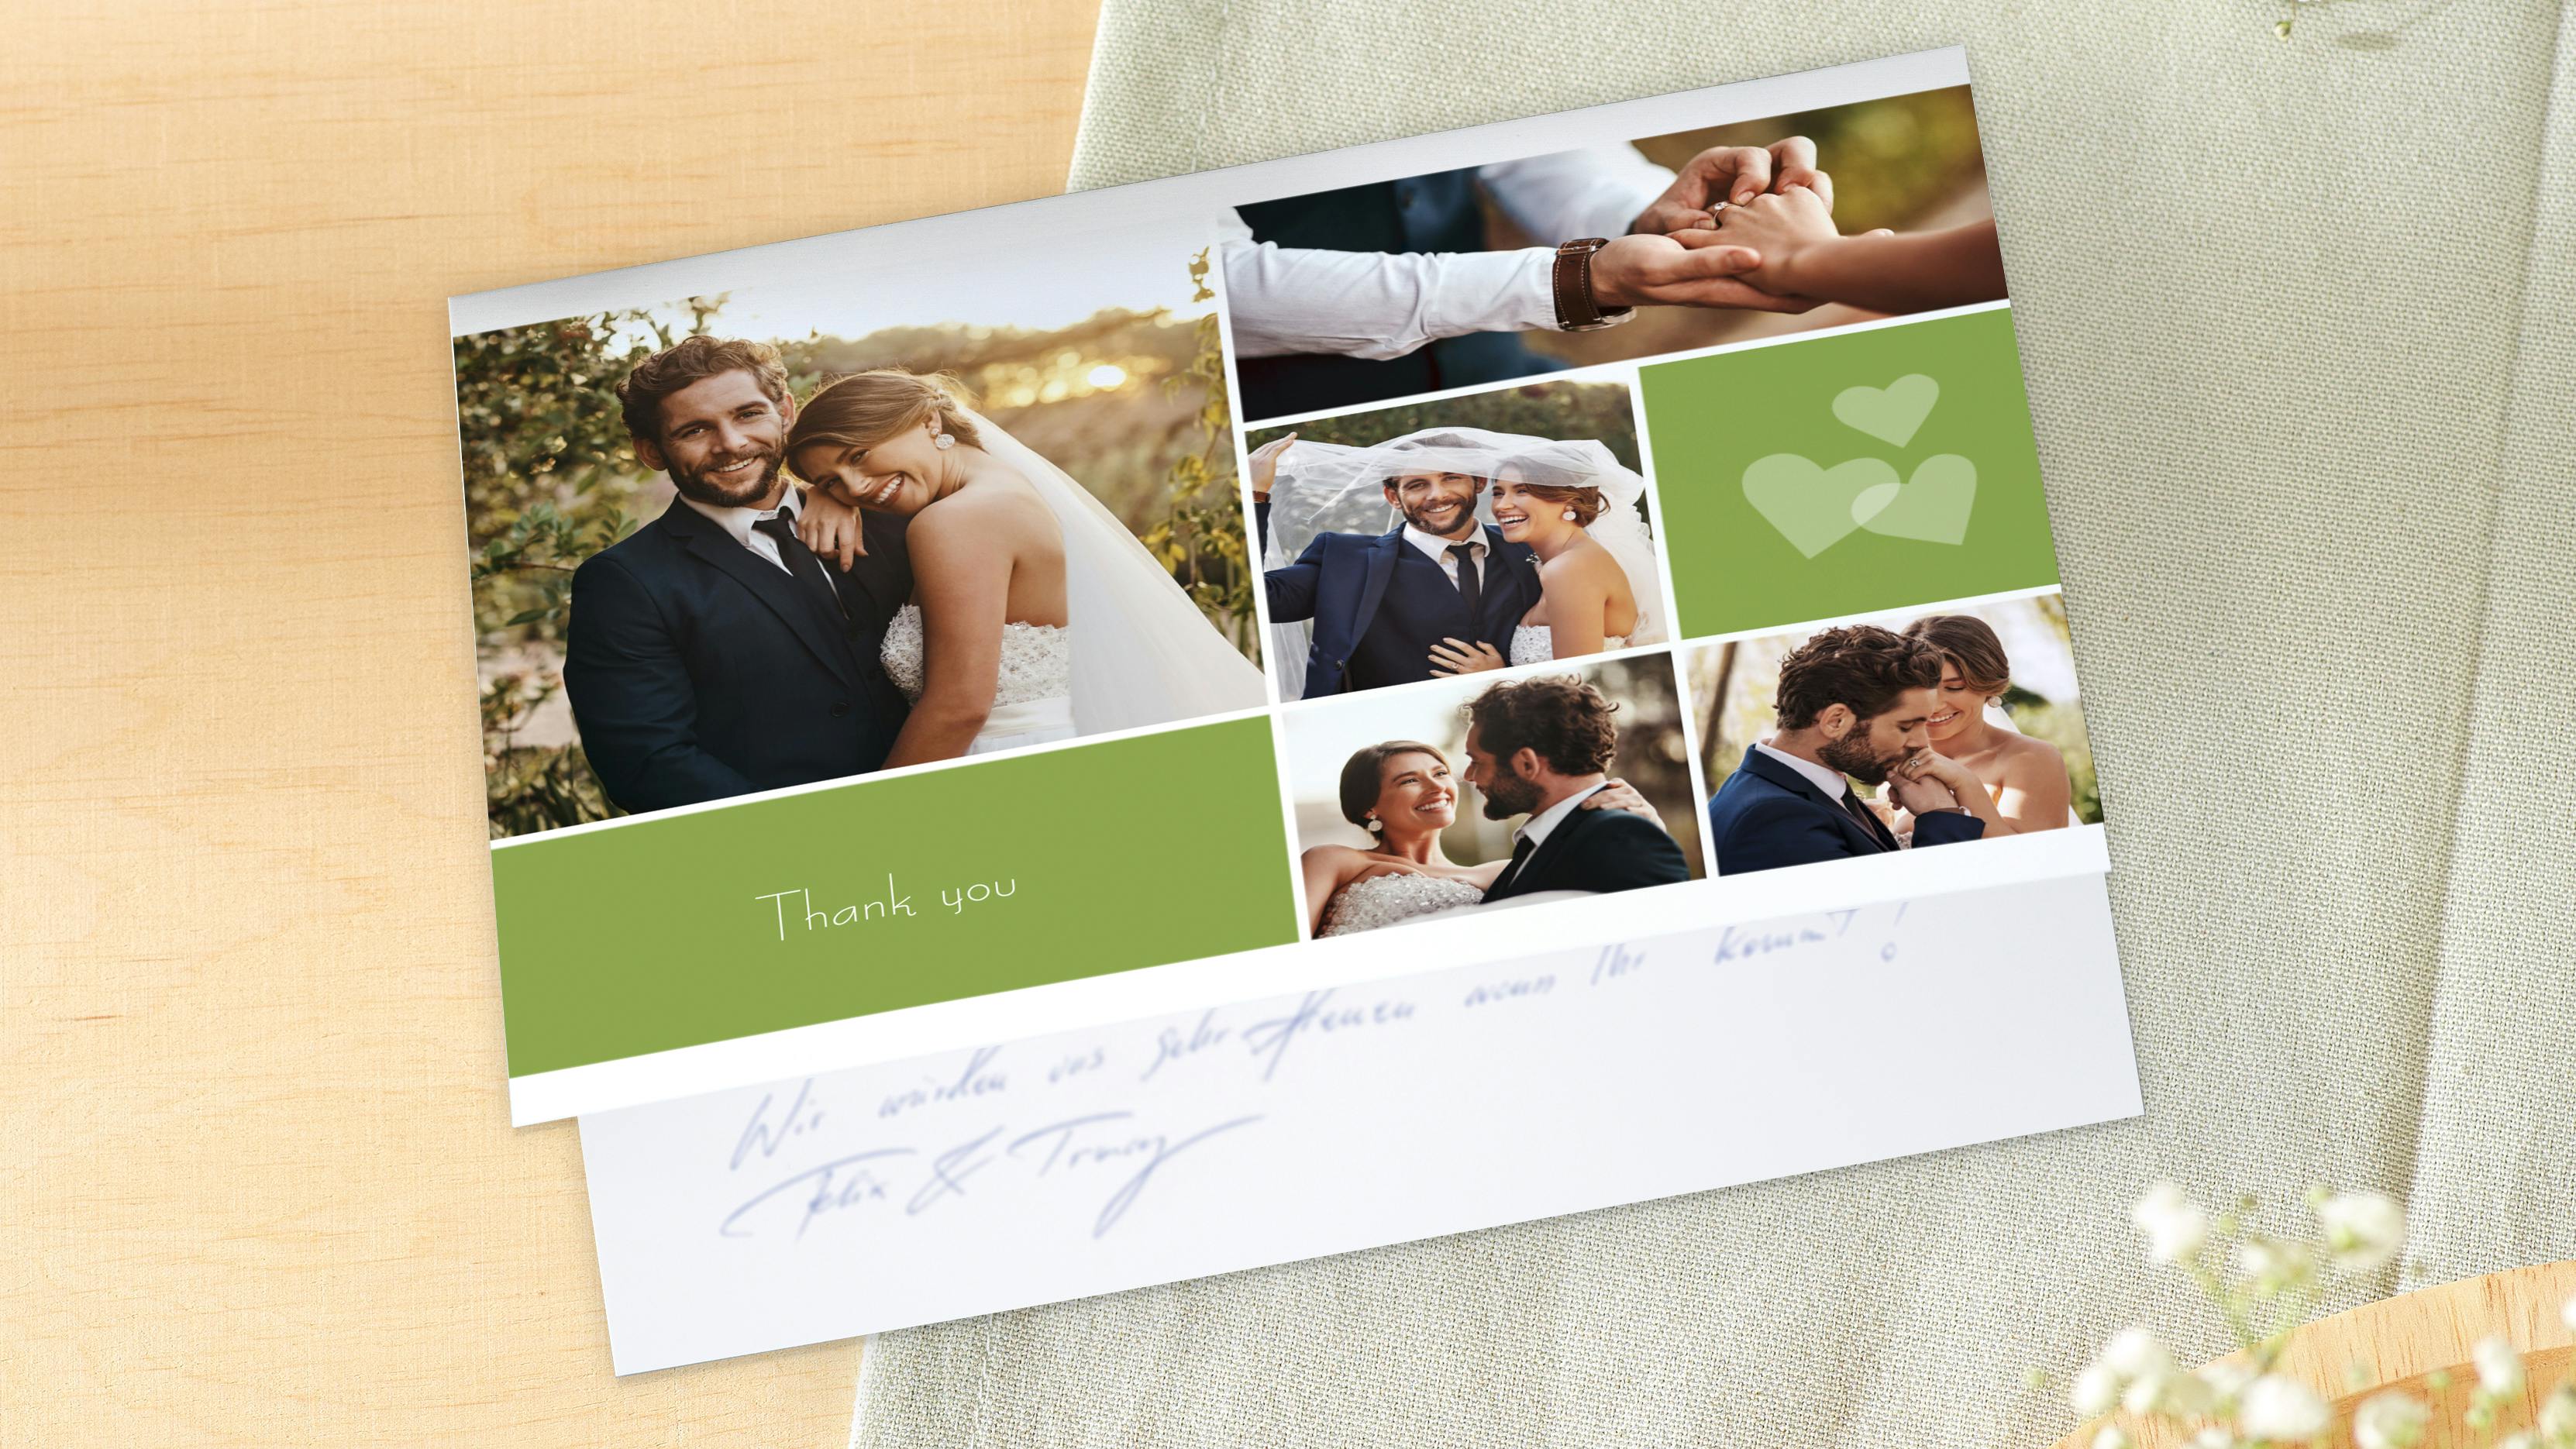 Vouwkaart als bedankkaartje met foto's van een bruiloft